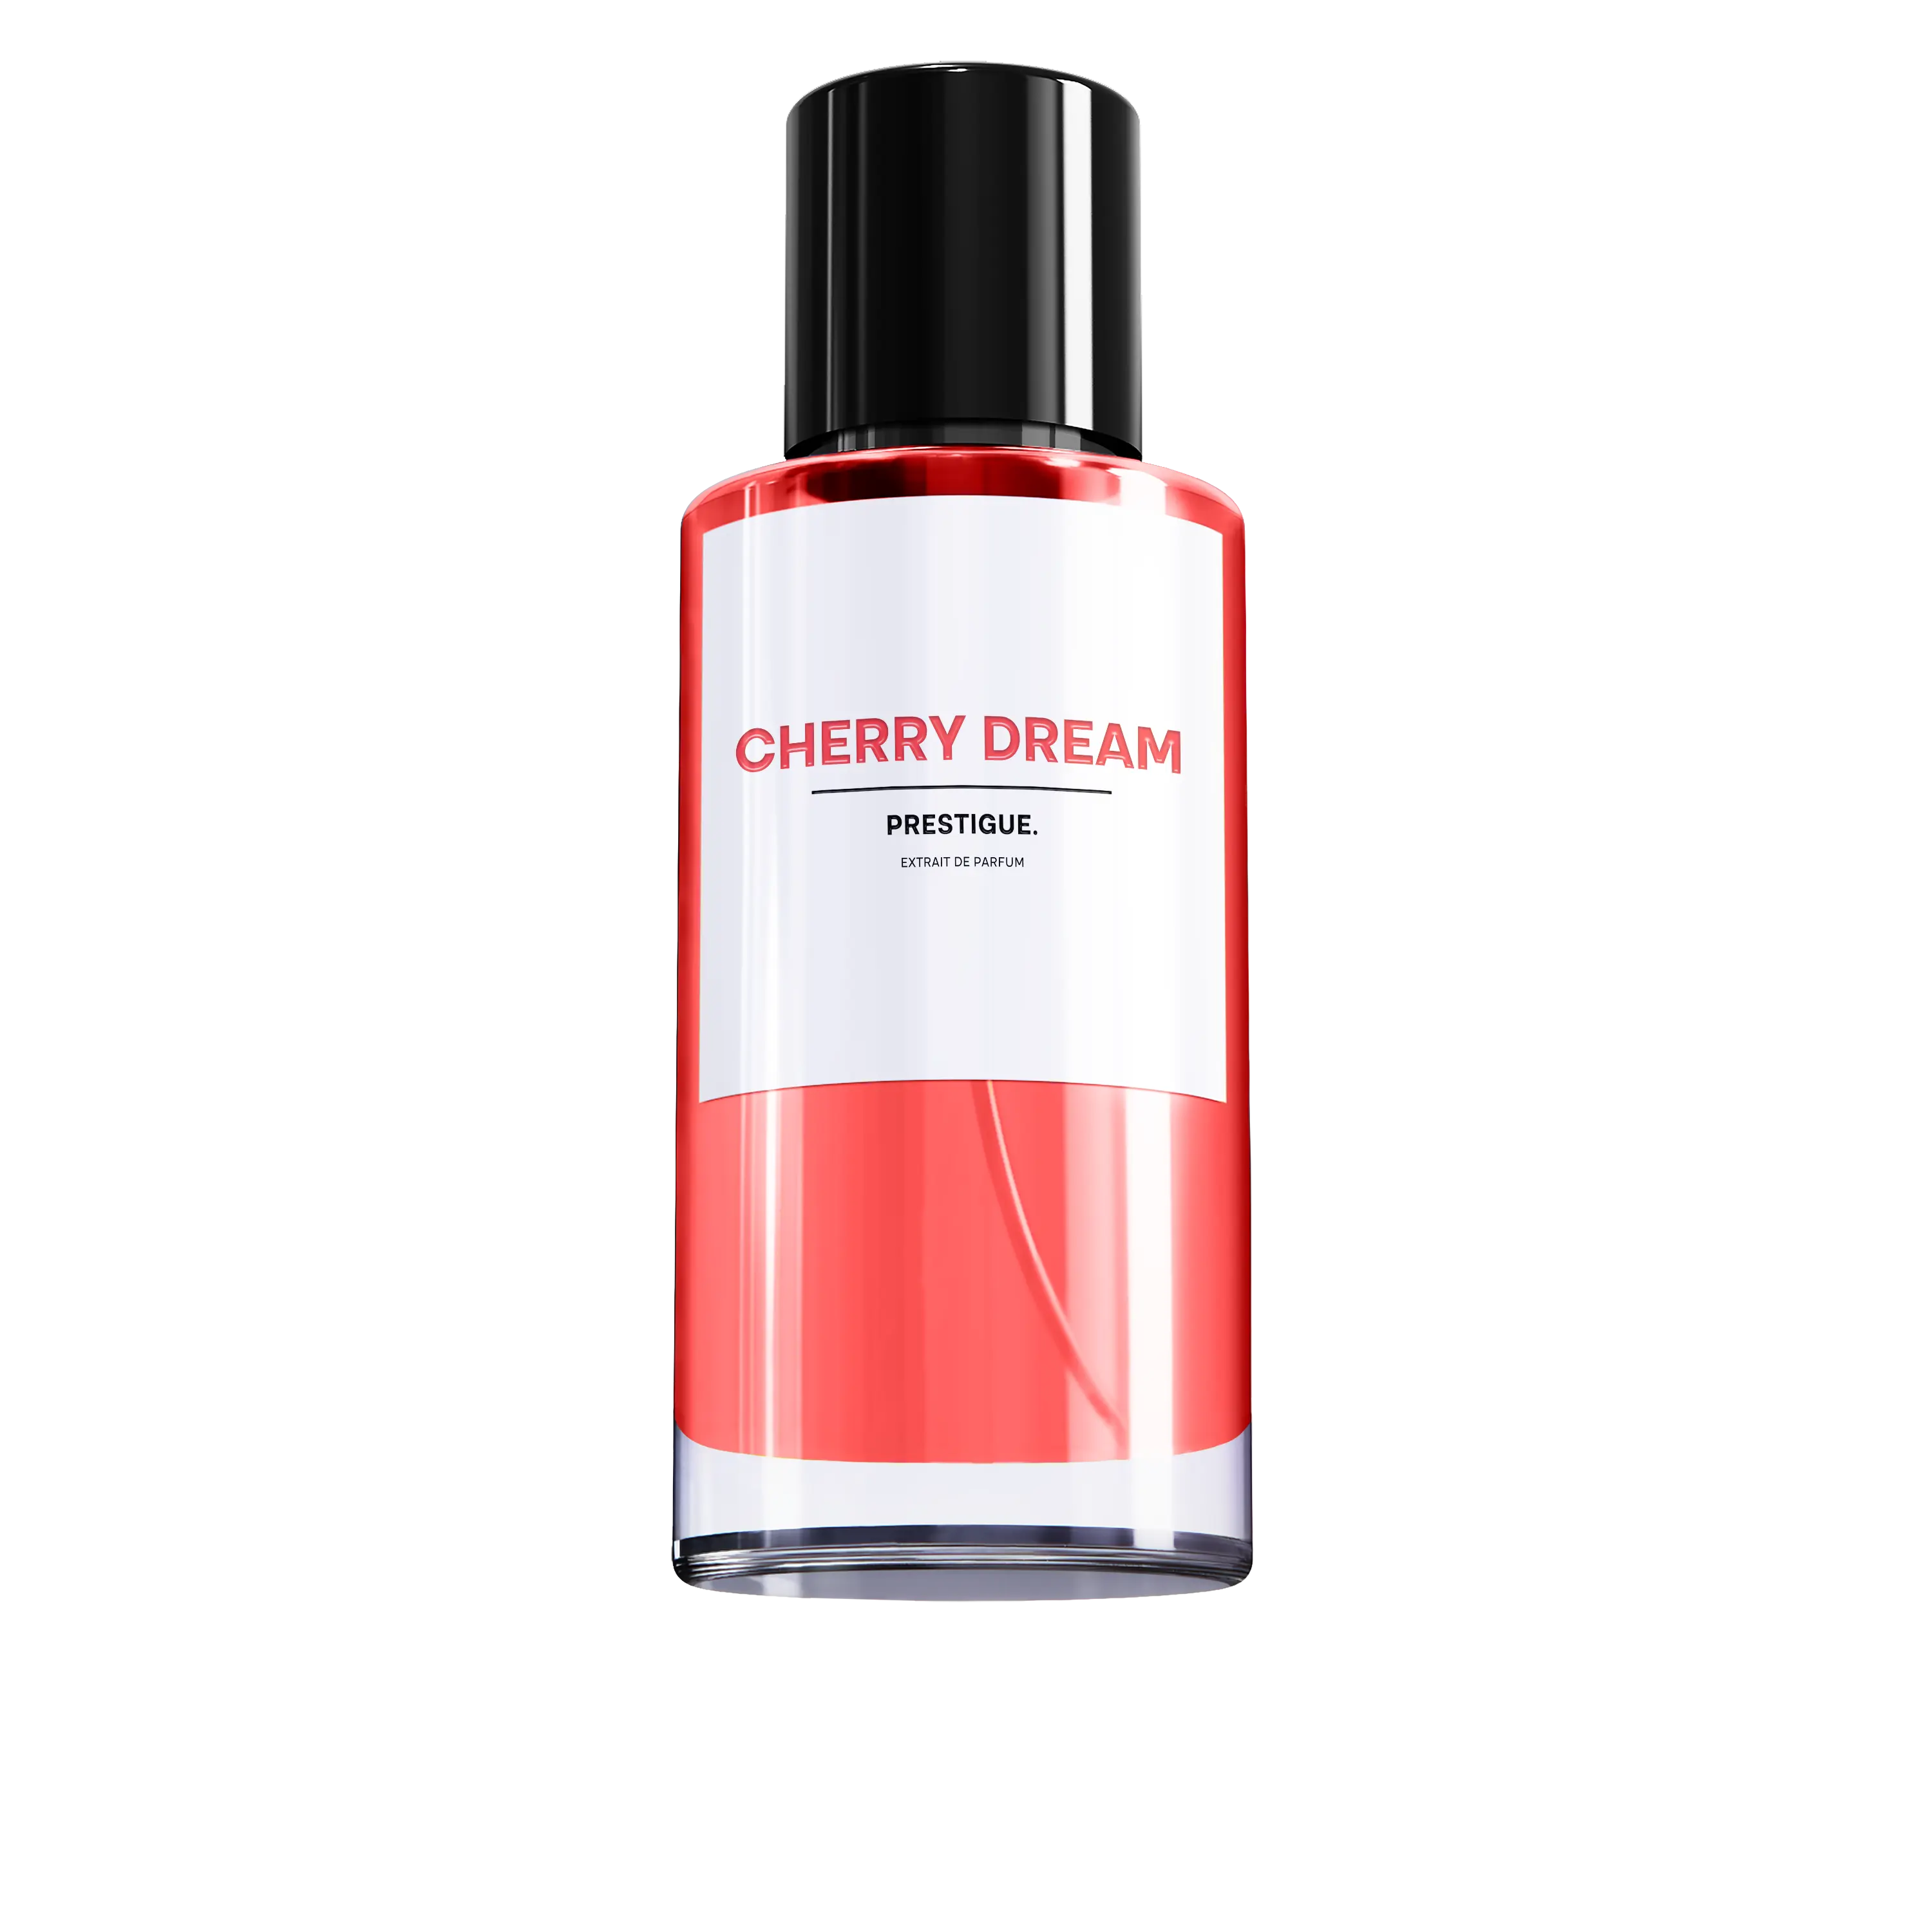 CHERRY DREAM - PRESTIGUE Lost Cherry